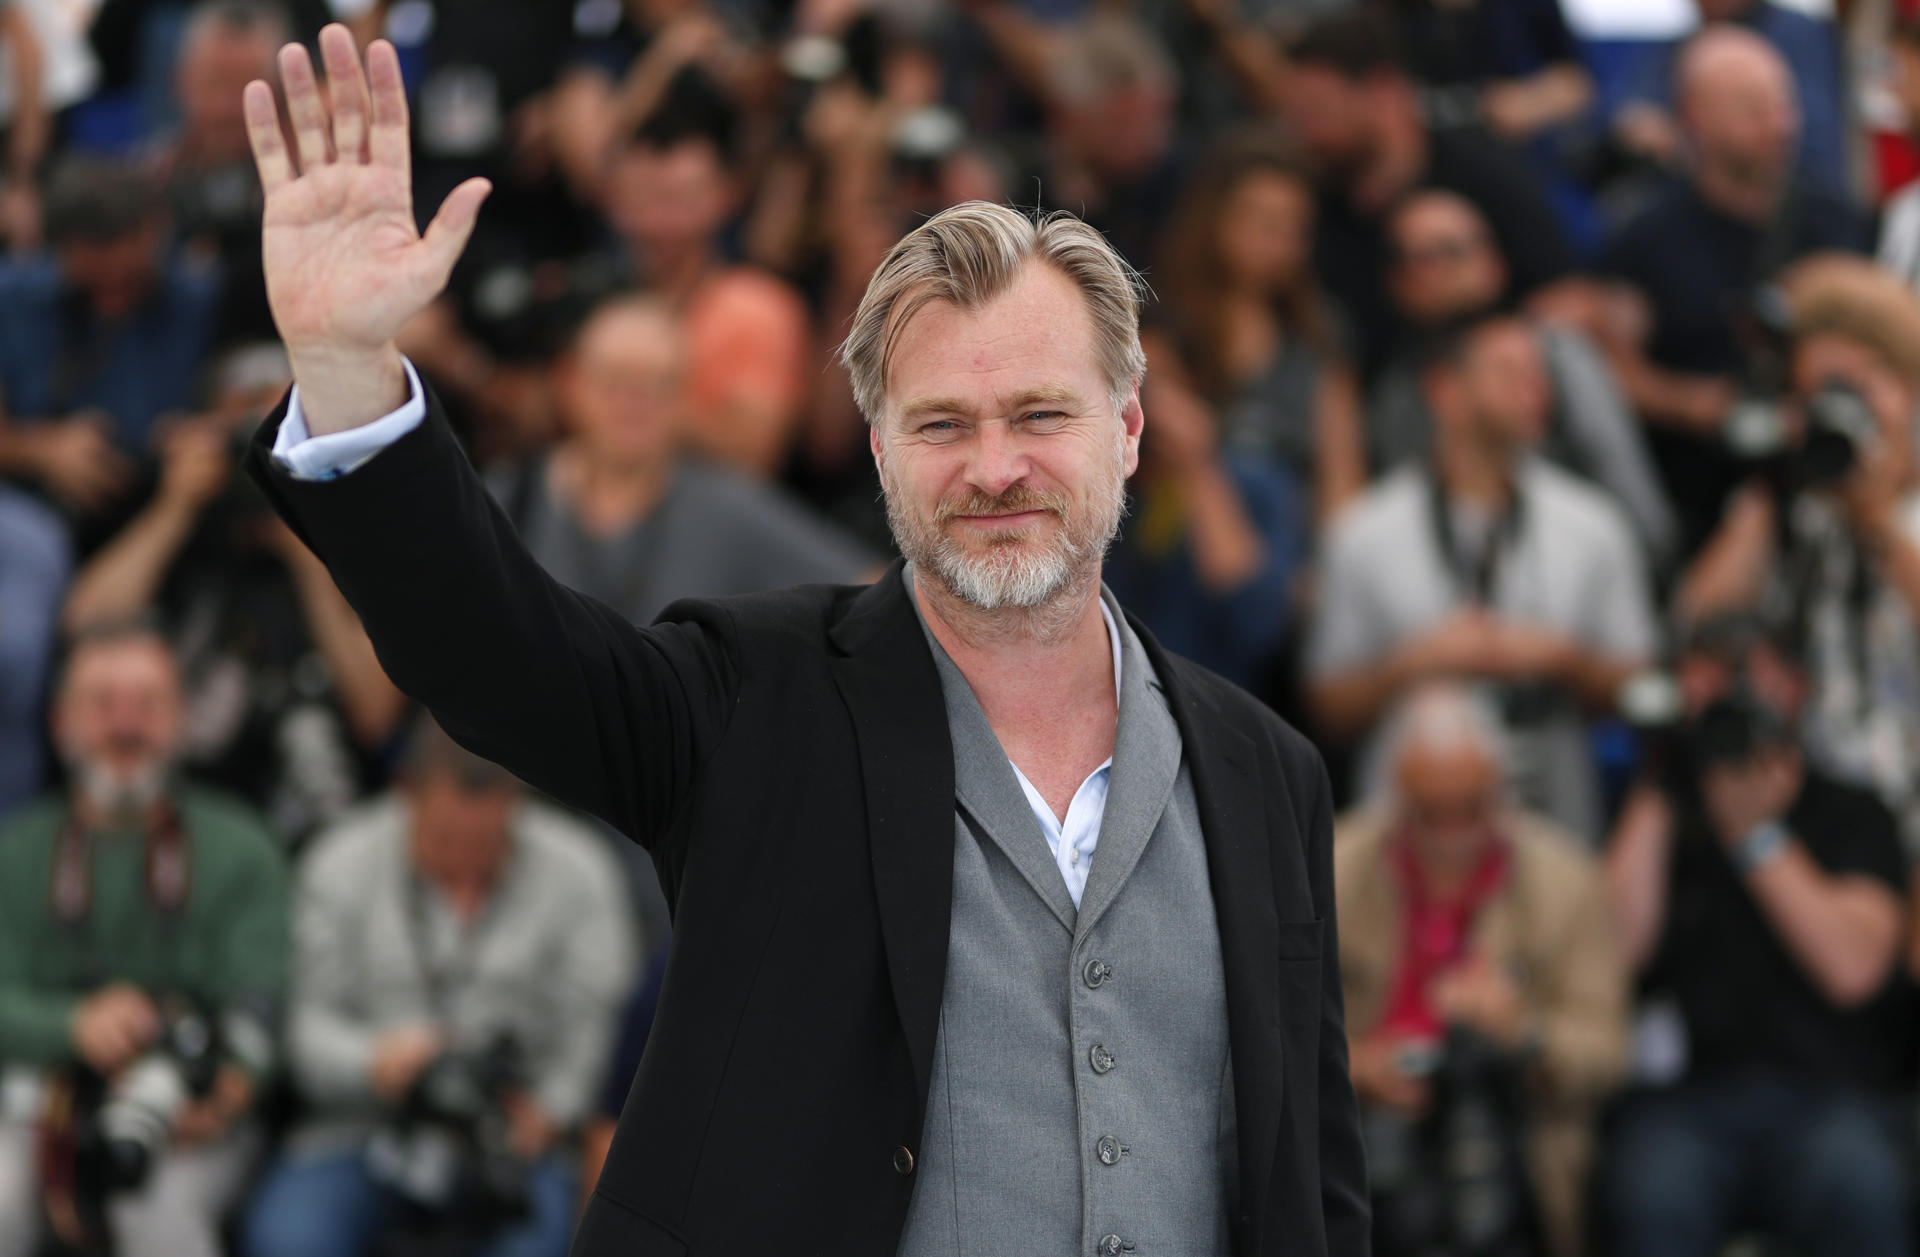 Fotografía de archivo fechada el 12 de mayo de 2018 donde aparece el director de cine británico Christopher Nolan mientras saluda a su llegada al Festival de Cannes (Francia). EFE/ Archivo